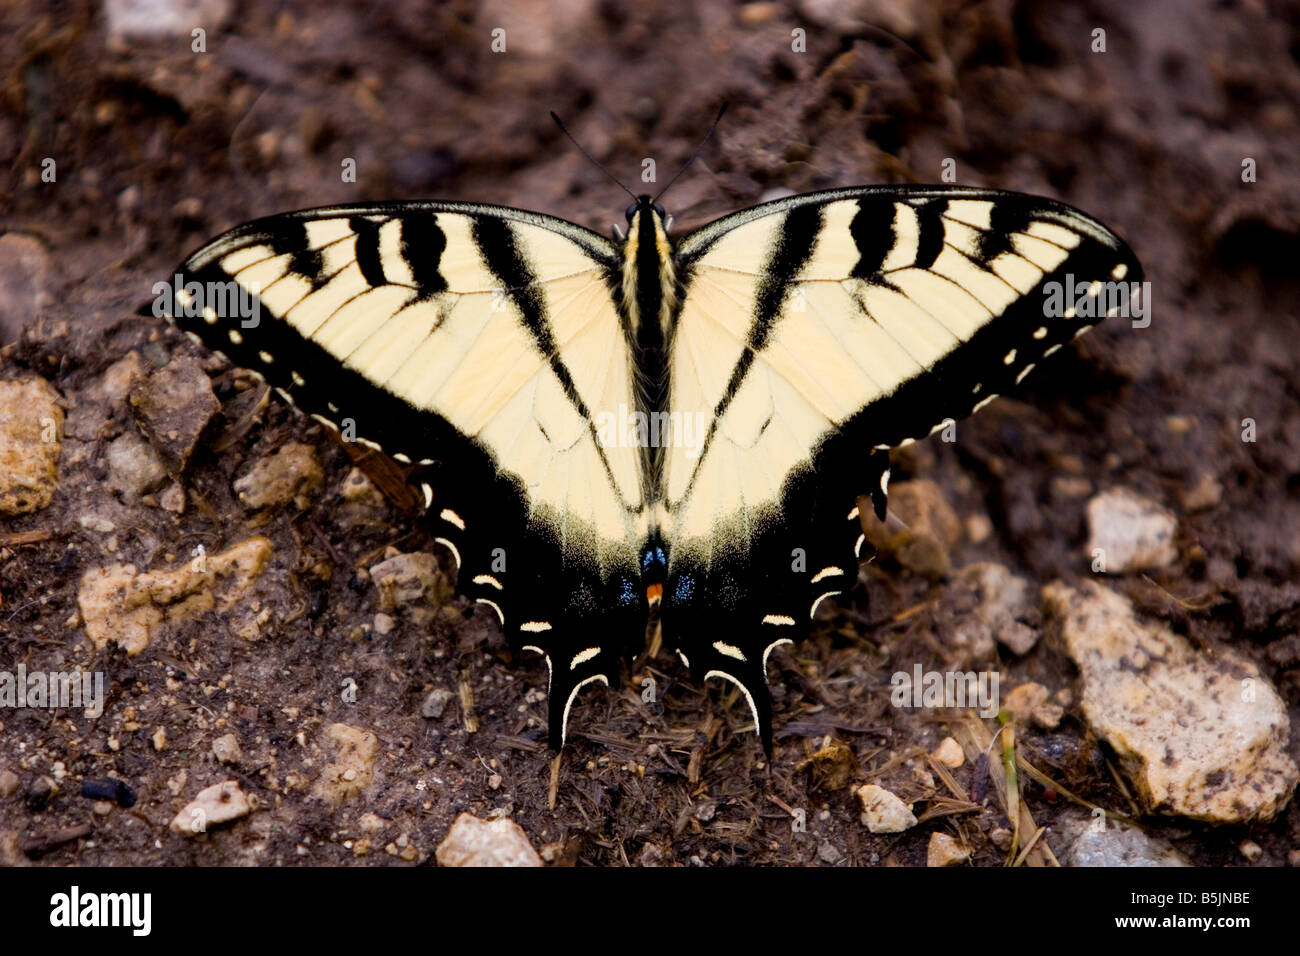 Tiger coda forcuta Butterfly Papilio Glaucas sul terreno Foto Stock